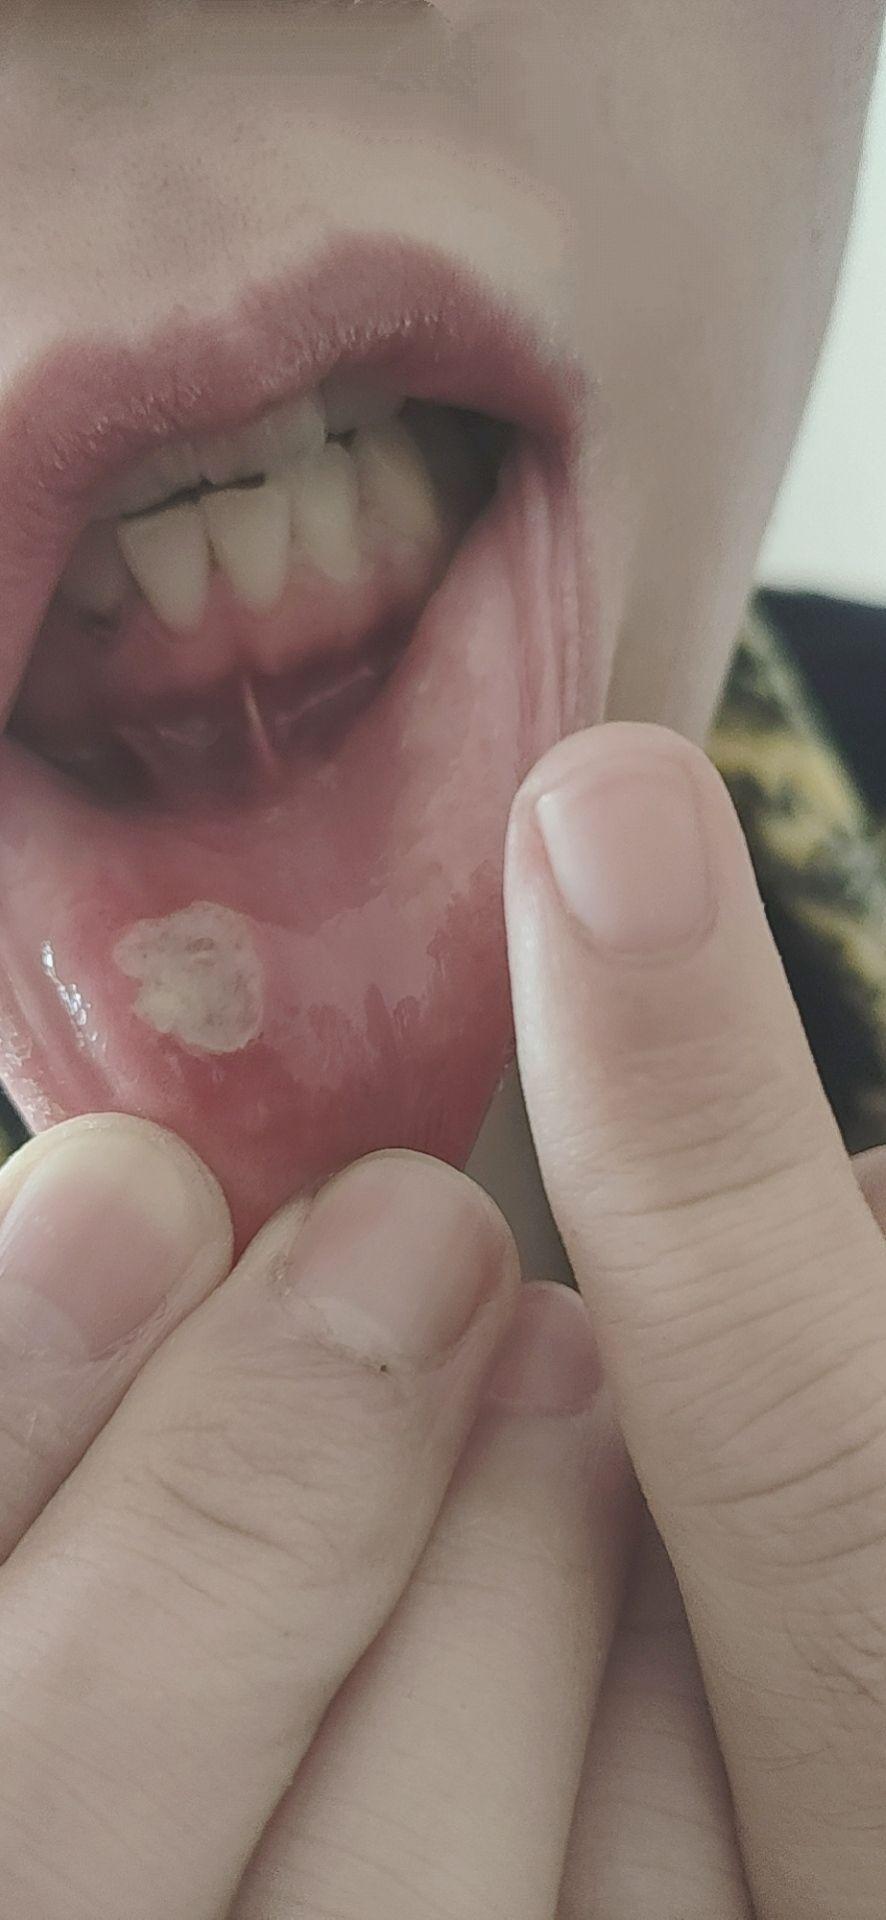 口腔溃疡留下的疤痕图图片